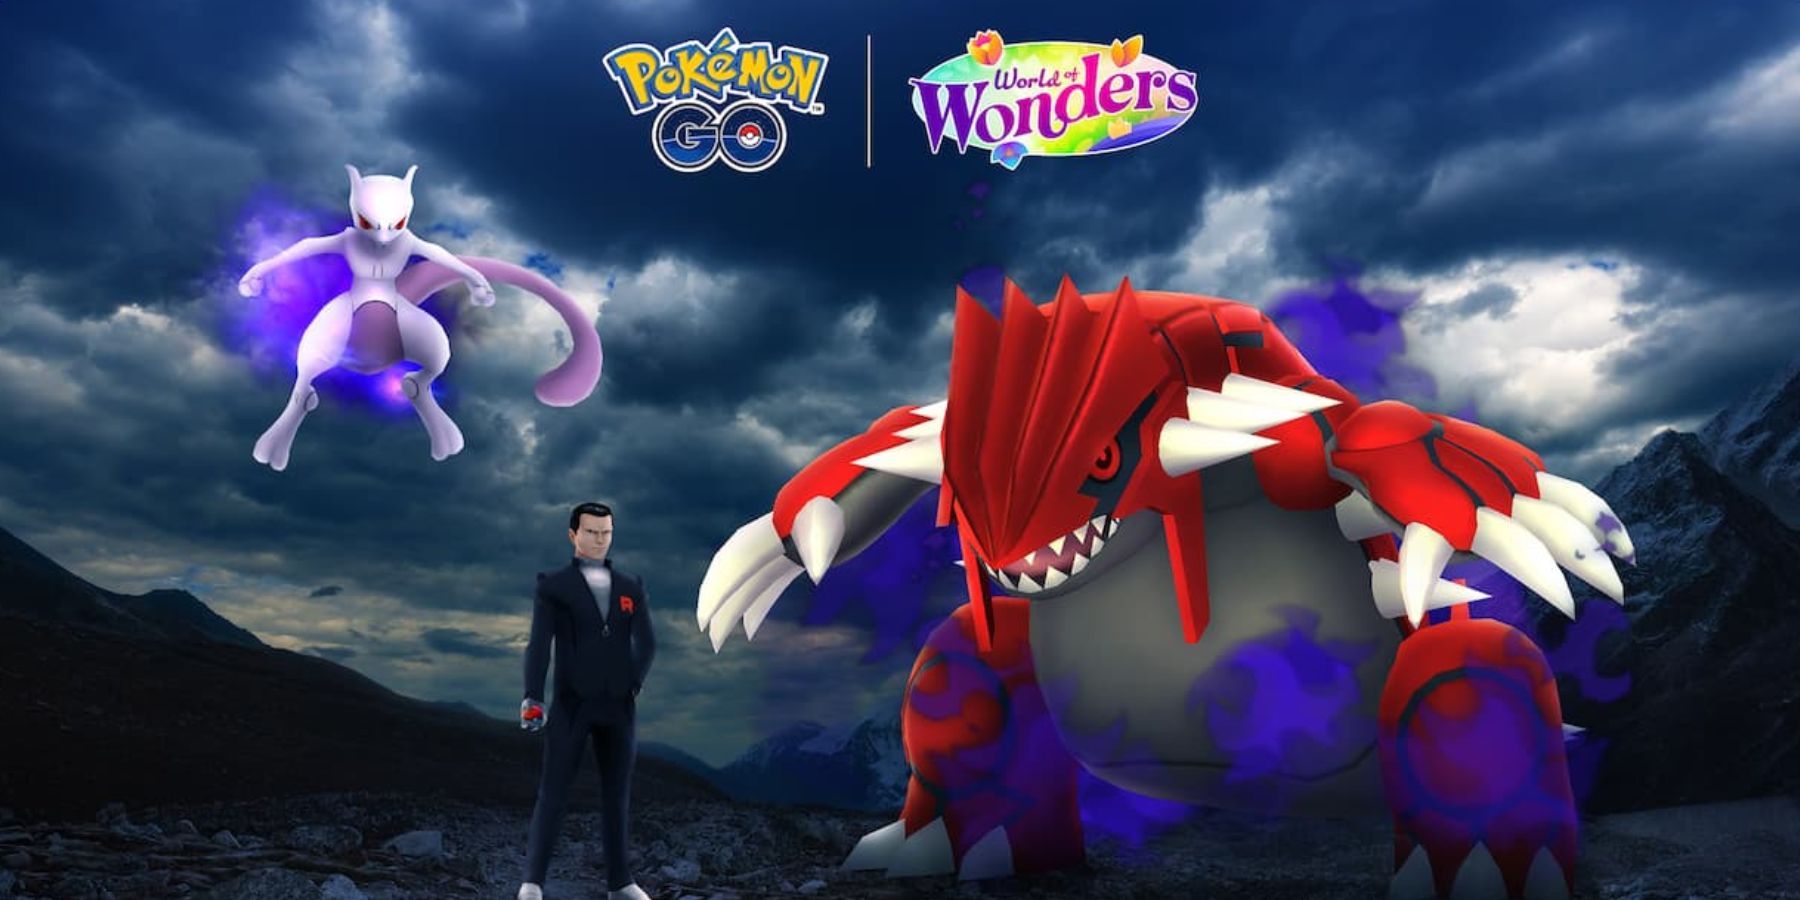 Pokemon GO World of Wonders Taken Over